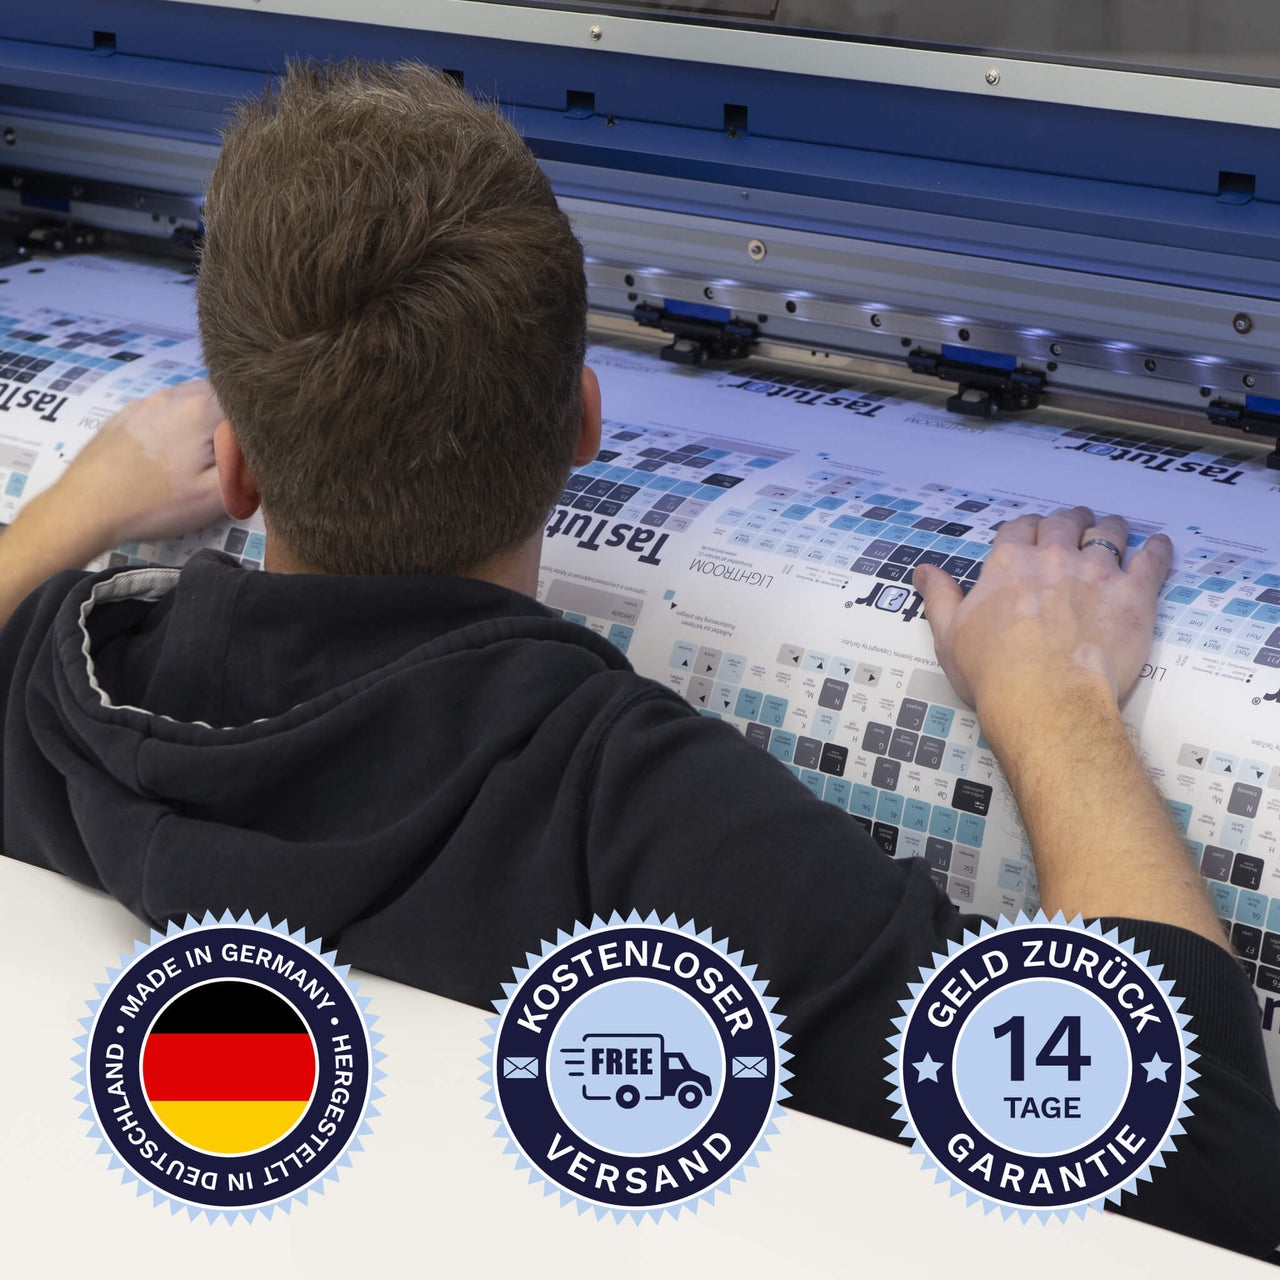 Pro Tools Tastaturaufkleber werden in Deutschland hergestellt. Der Versand ist kostenlos und wir gewährleisten 14 Tage Geld zurück Garantie.